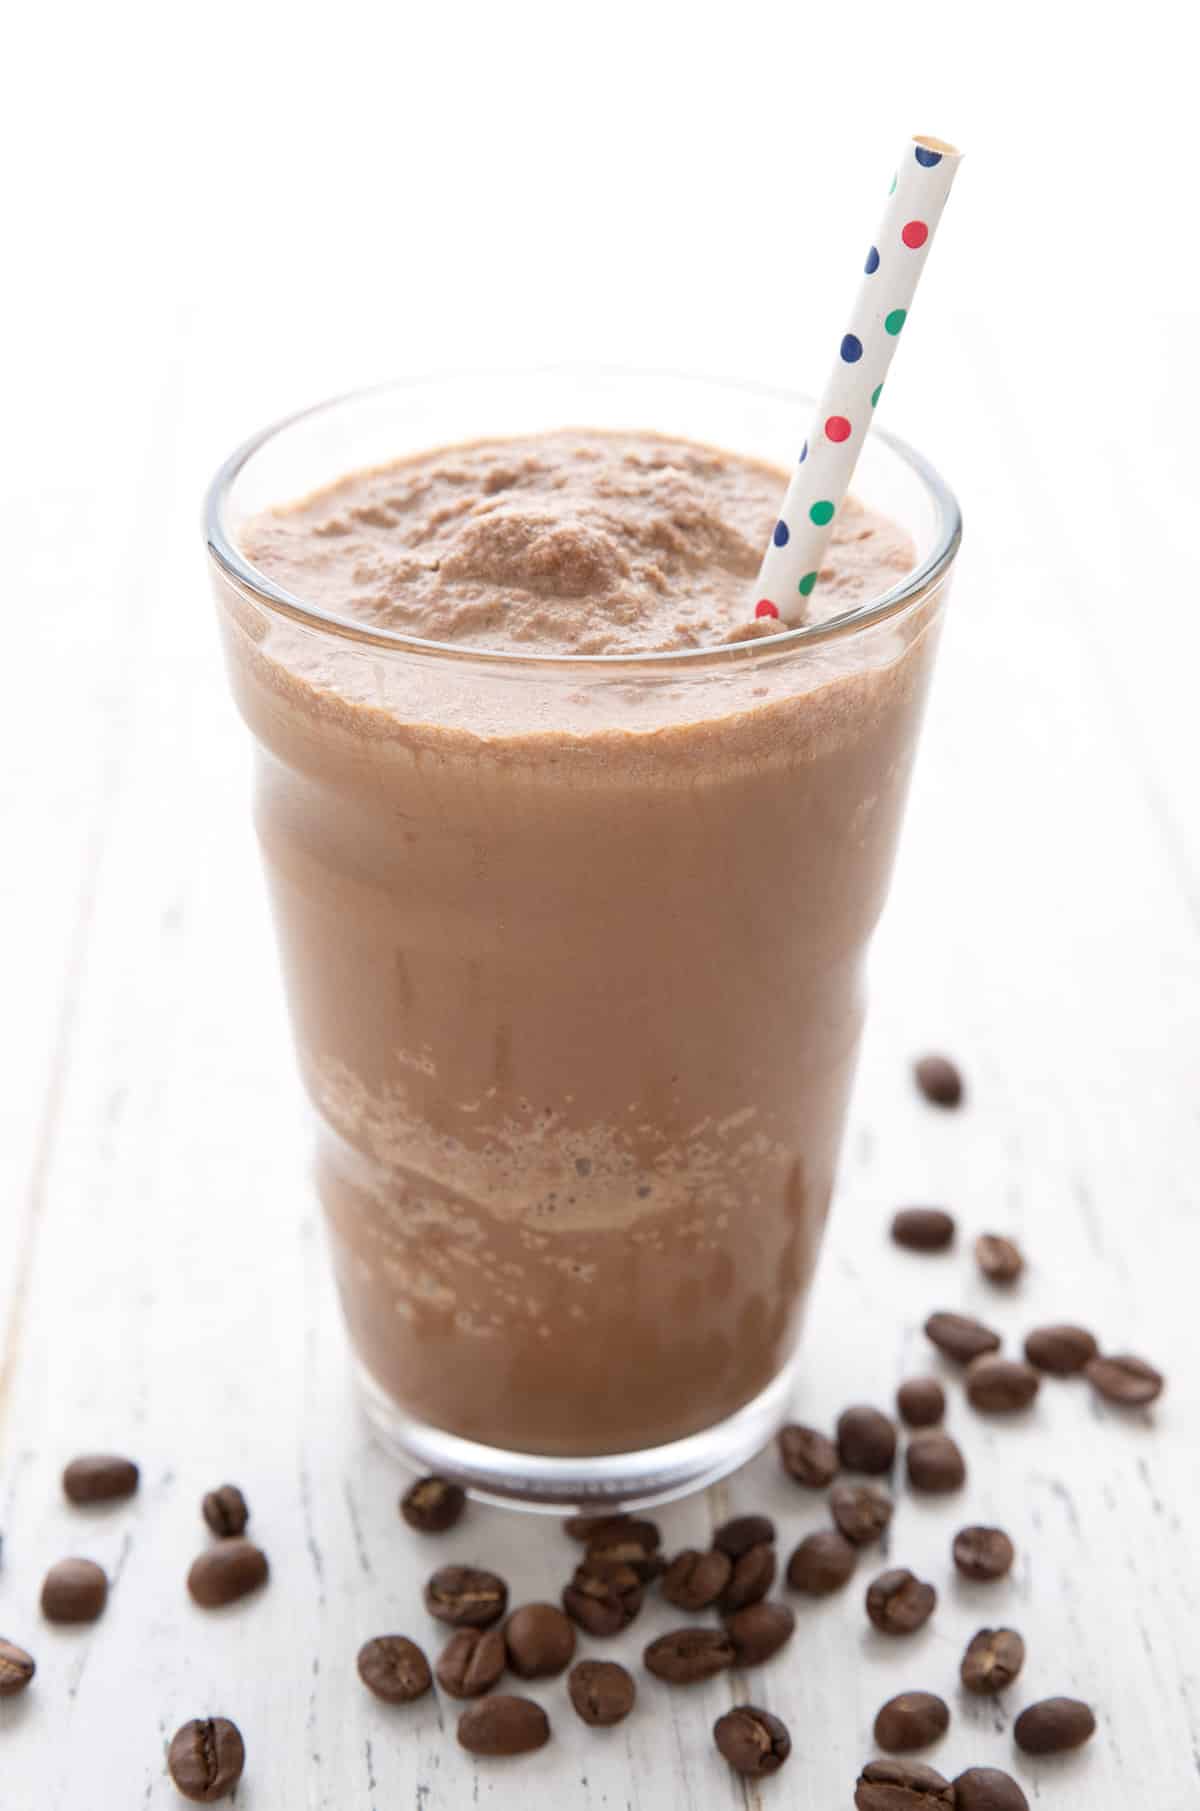 Enkel keto-proteinshake med kaffe i et høyt glass med et strå med polkaprikker. 